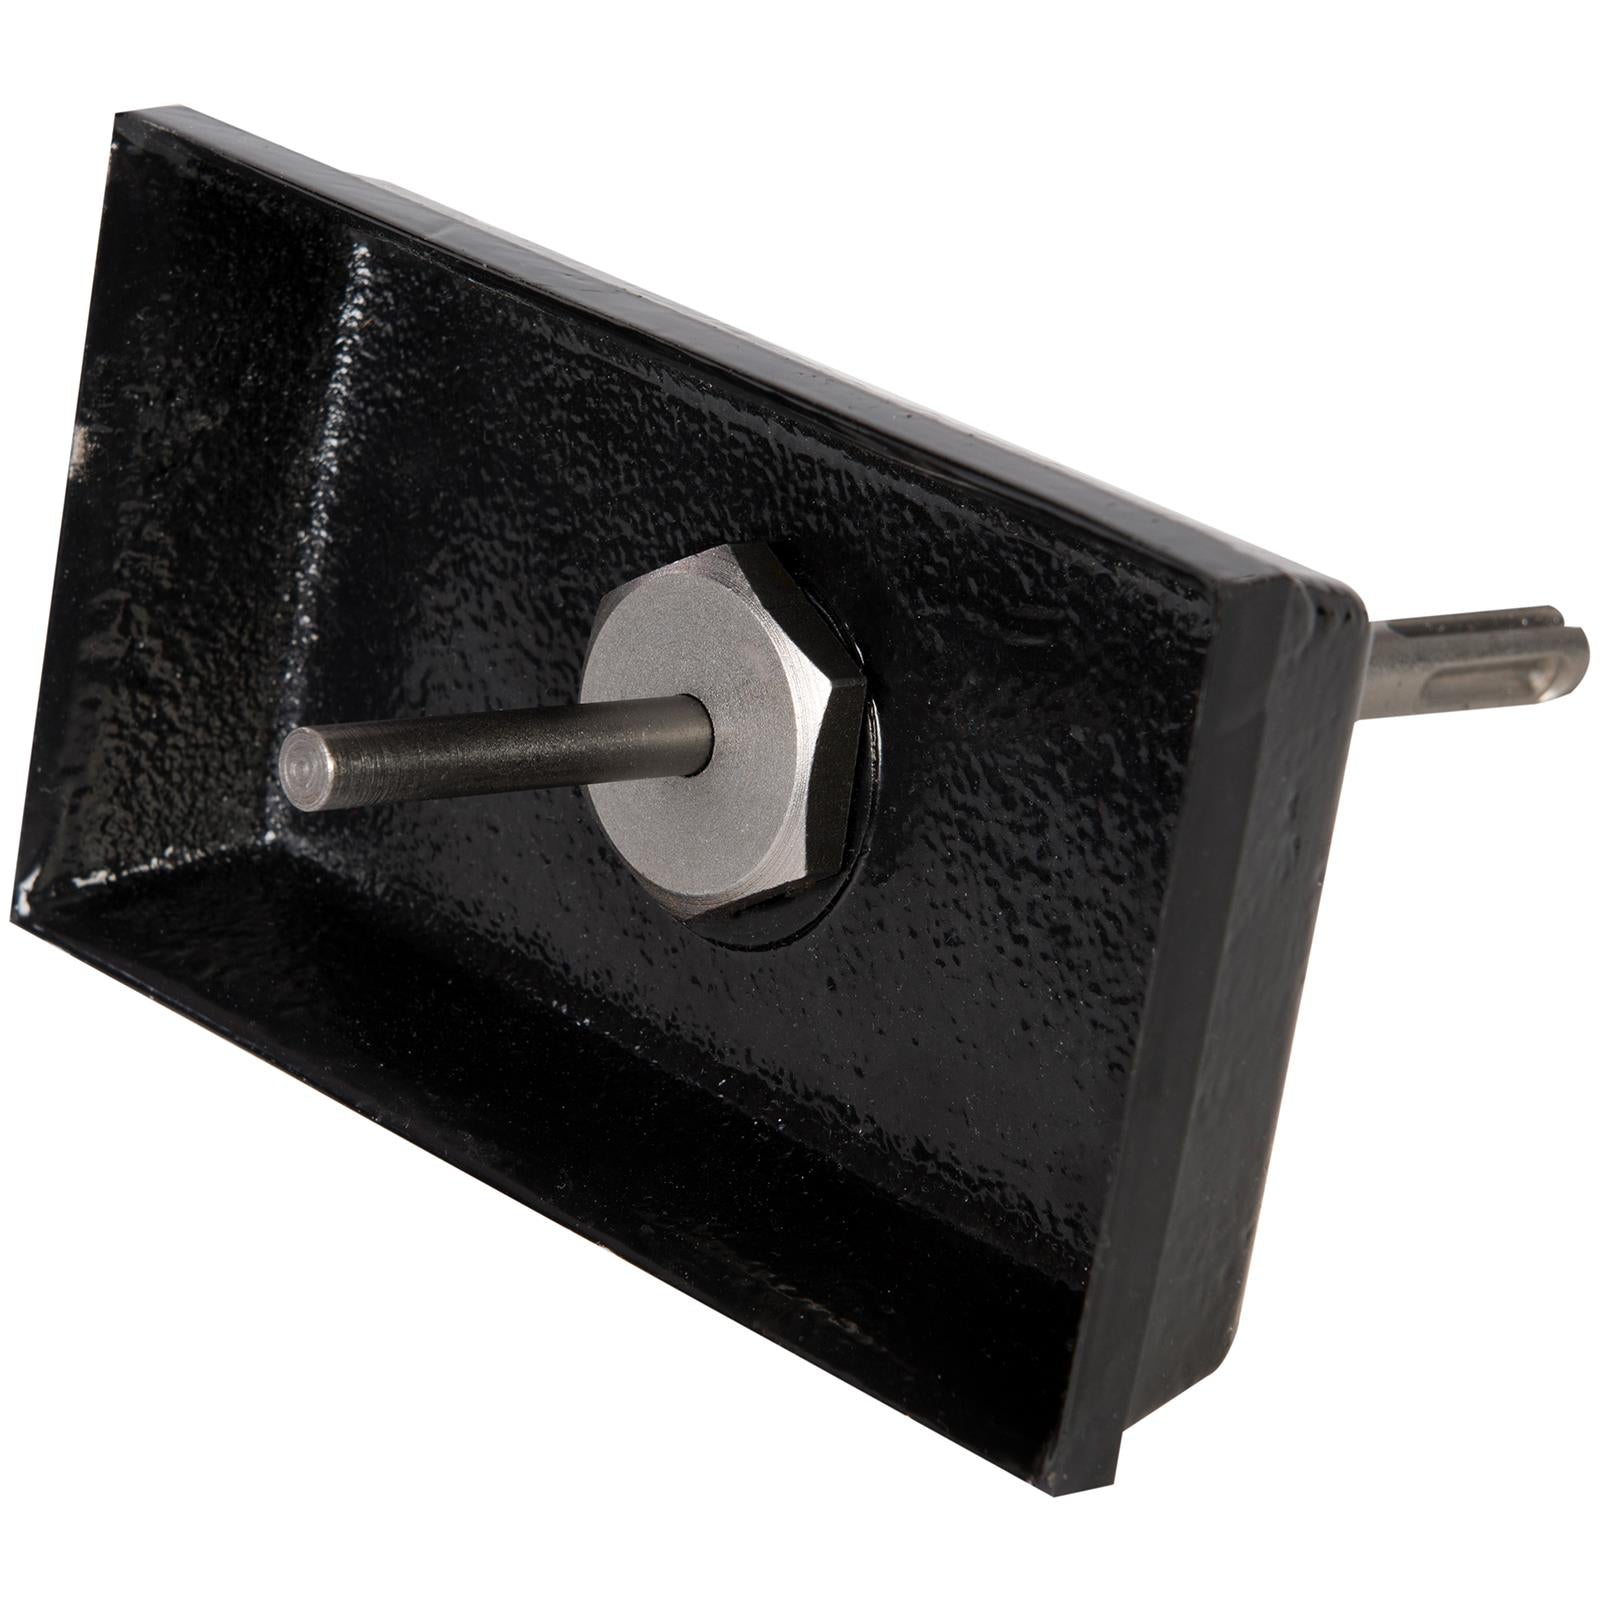 Silverline Double Plug Socket Box Cutter 77 x 154mm Masonry Back Box